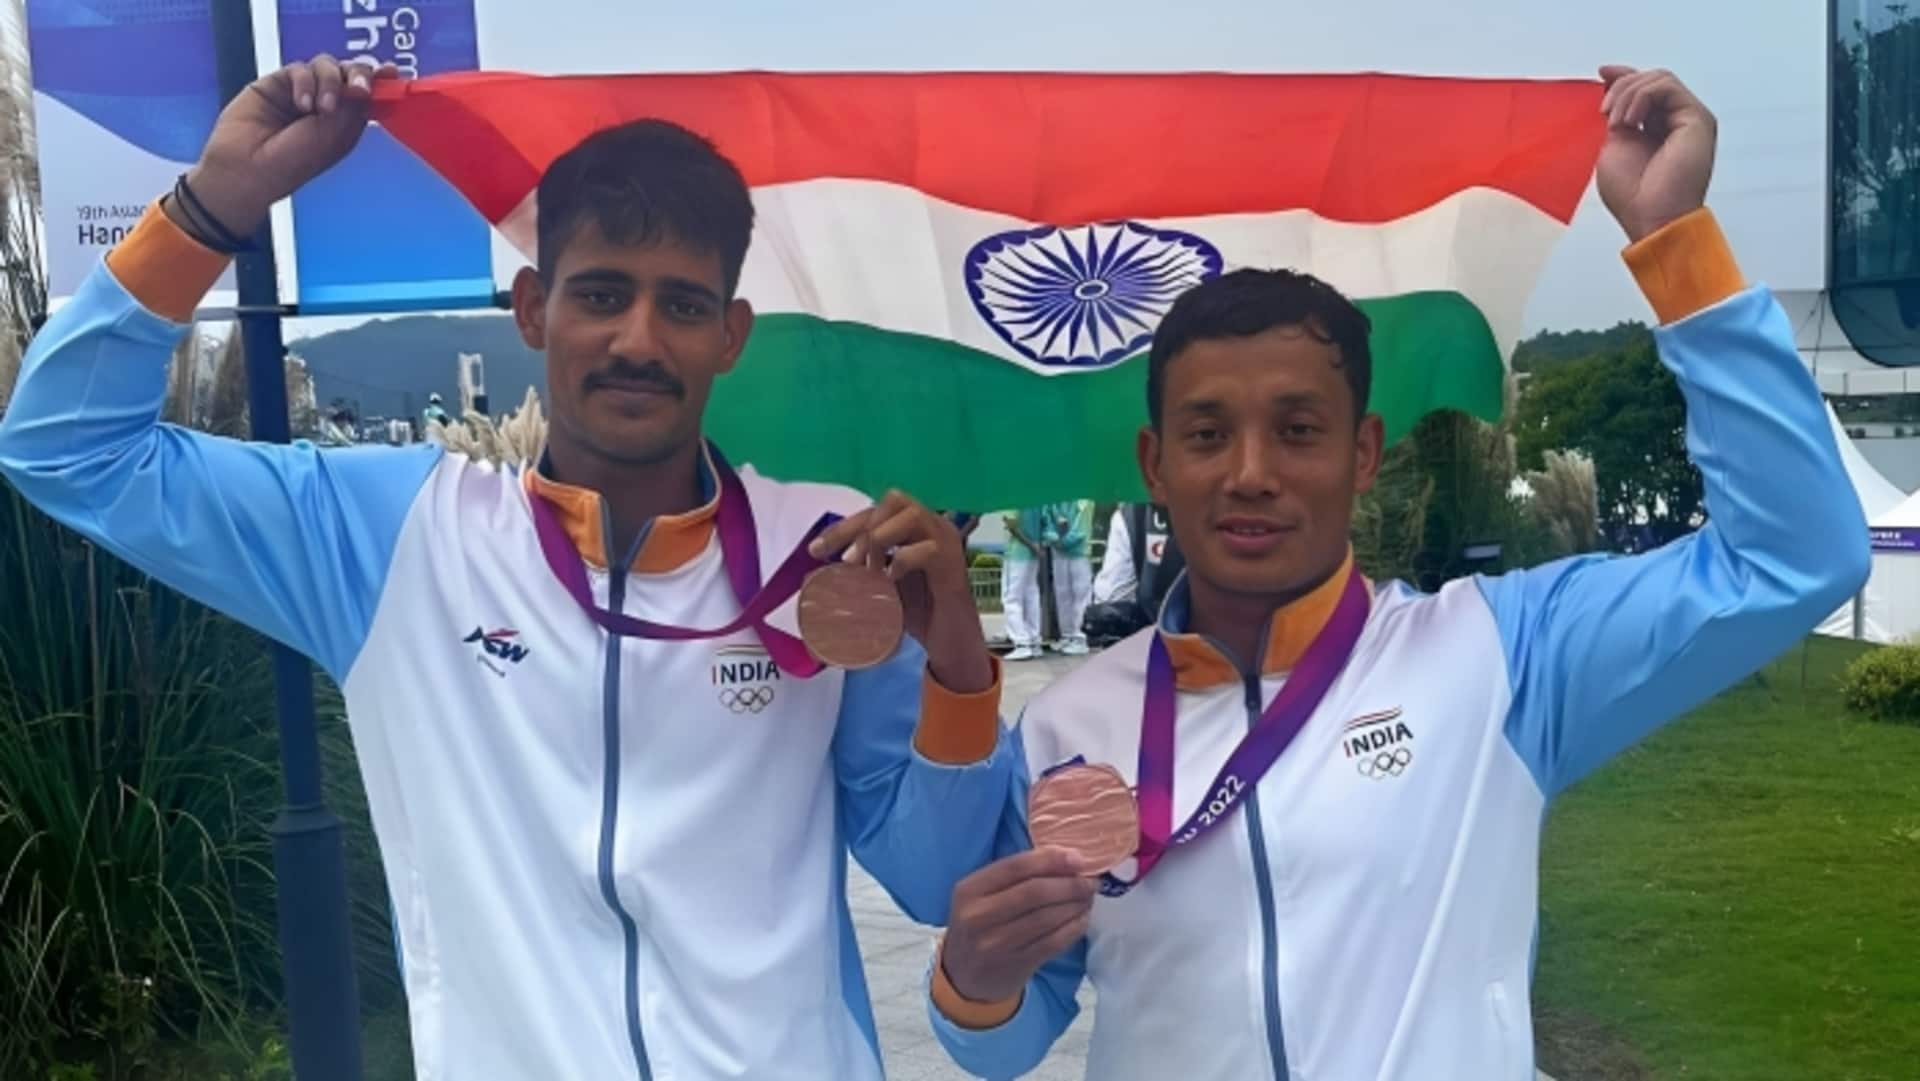 एशियाई खेल: अर्जुन सिंह और सुनील सिंह सलाम की जोड़ी ने नौकायान में जीता कांस्य पदक